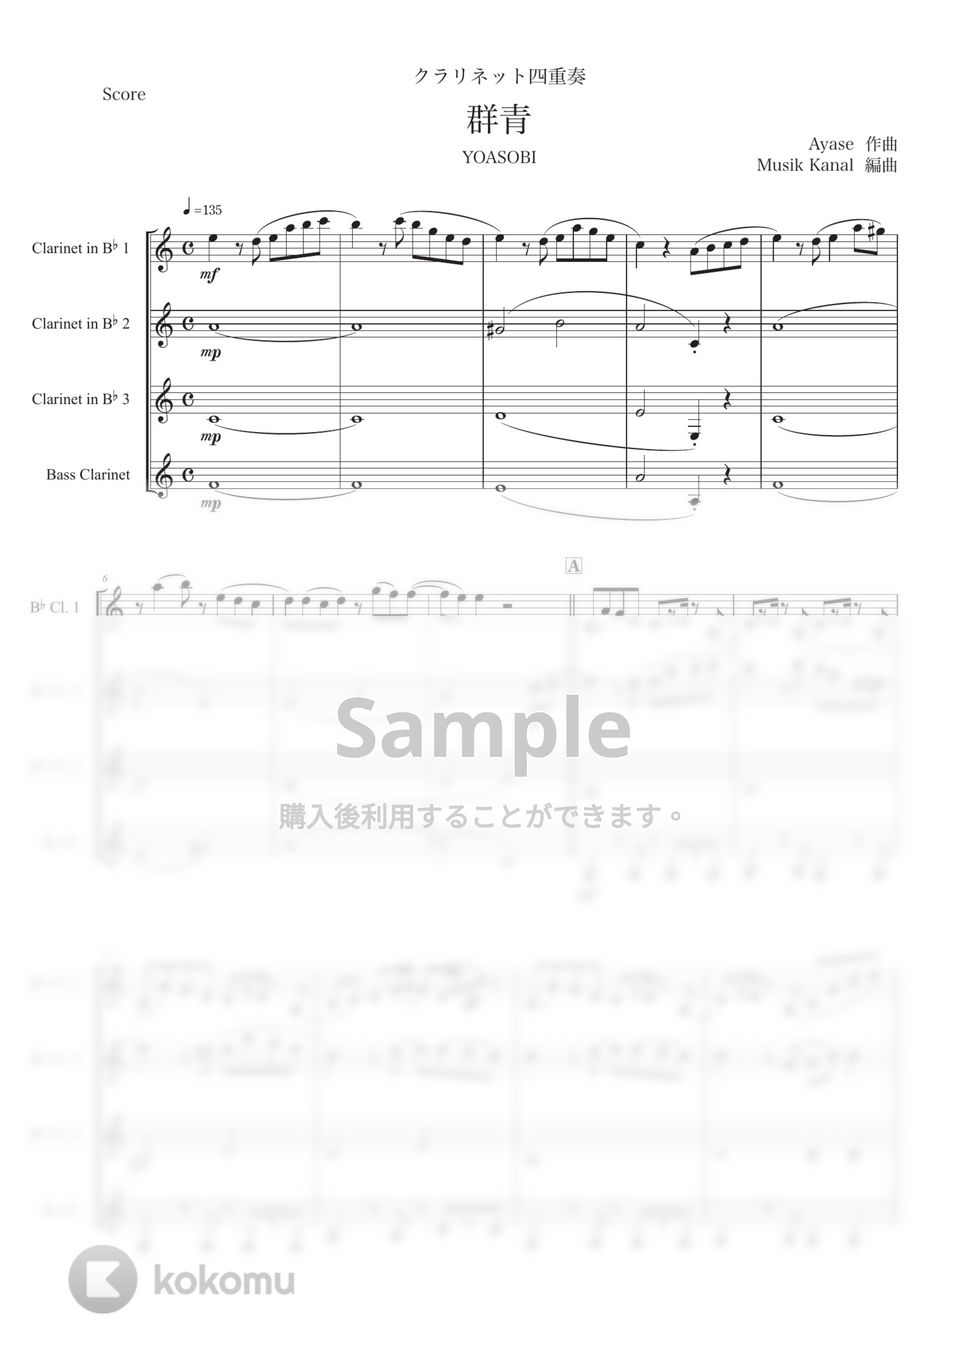 Ayase - 群青/YOASOBI【クラリネット四重奏】 by Musik Kanal